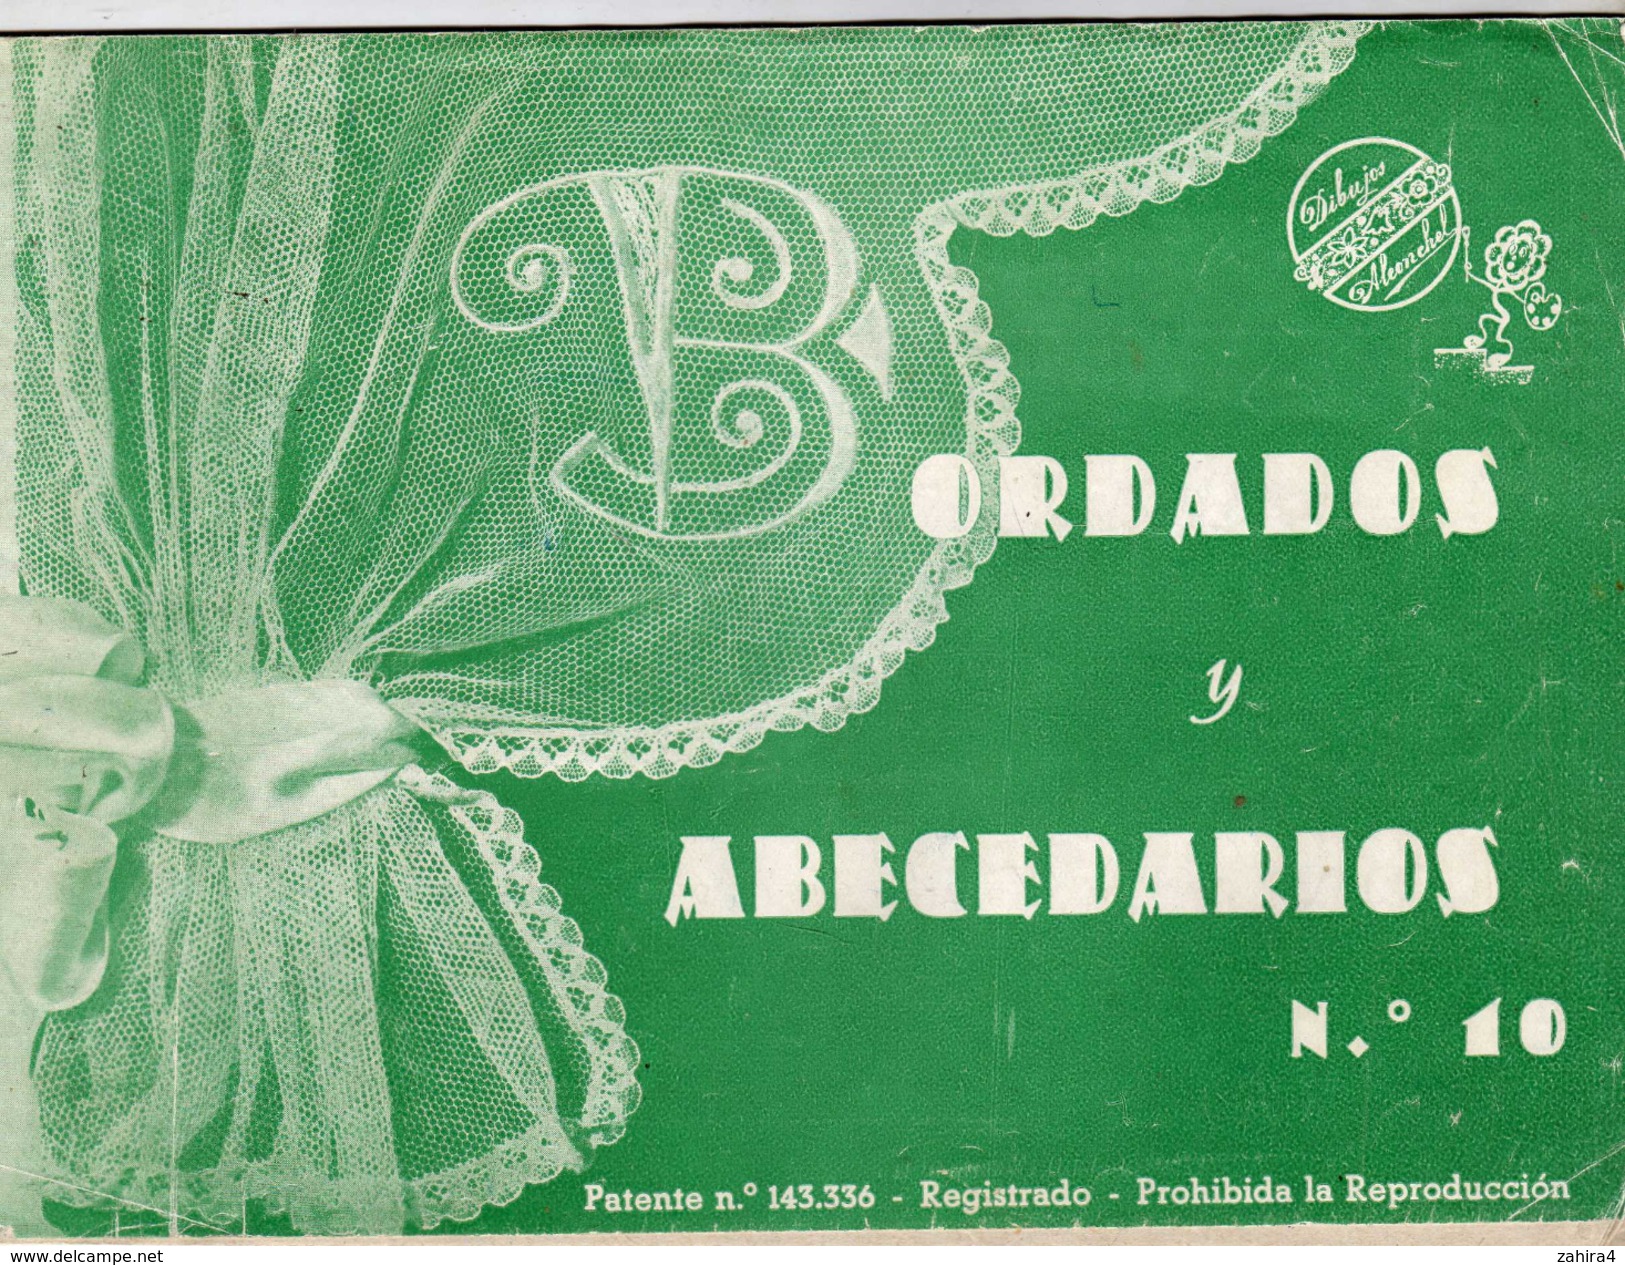 Diburos Aleonchel - Bordados Y Abecedaros N° 10 - Patente N° 143.336 - Valencia - Praktisch